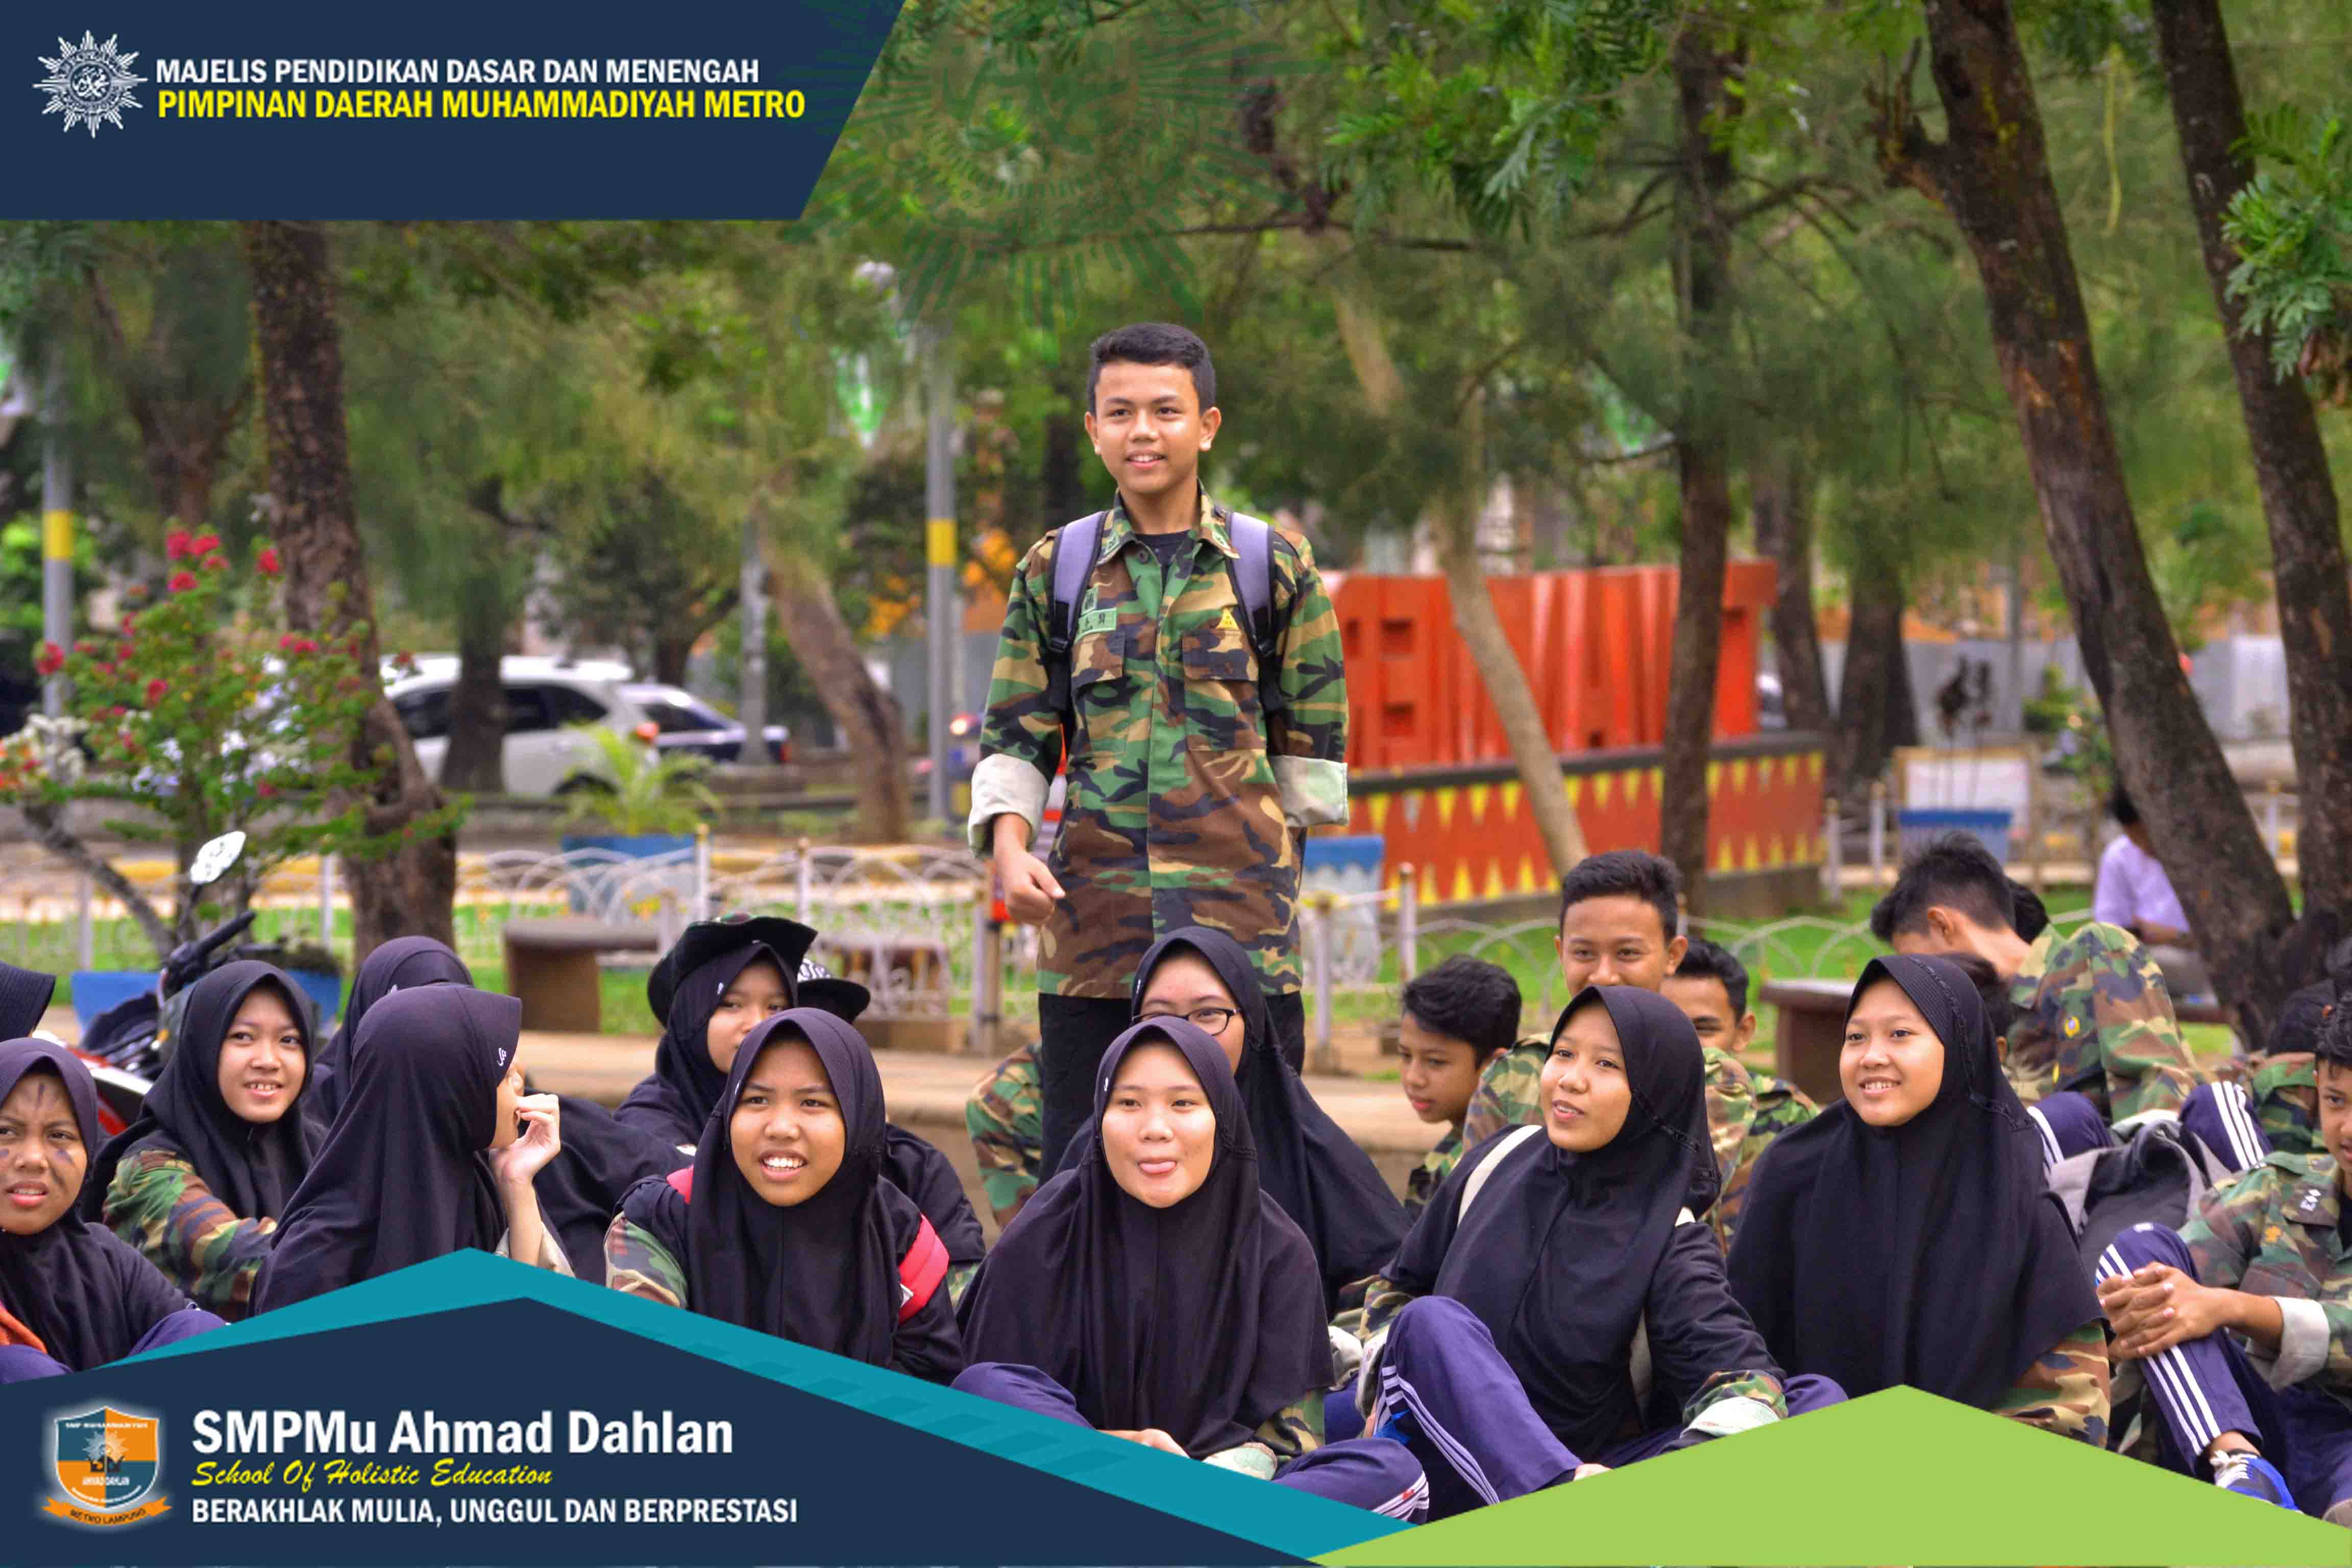 Cara SMP MU Ahmad Dahlan Merayakan Hari Pahlawan